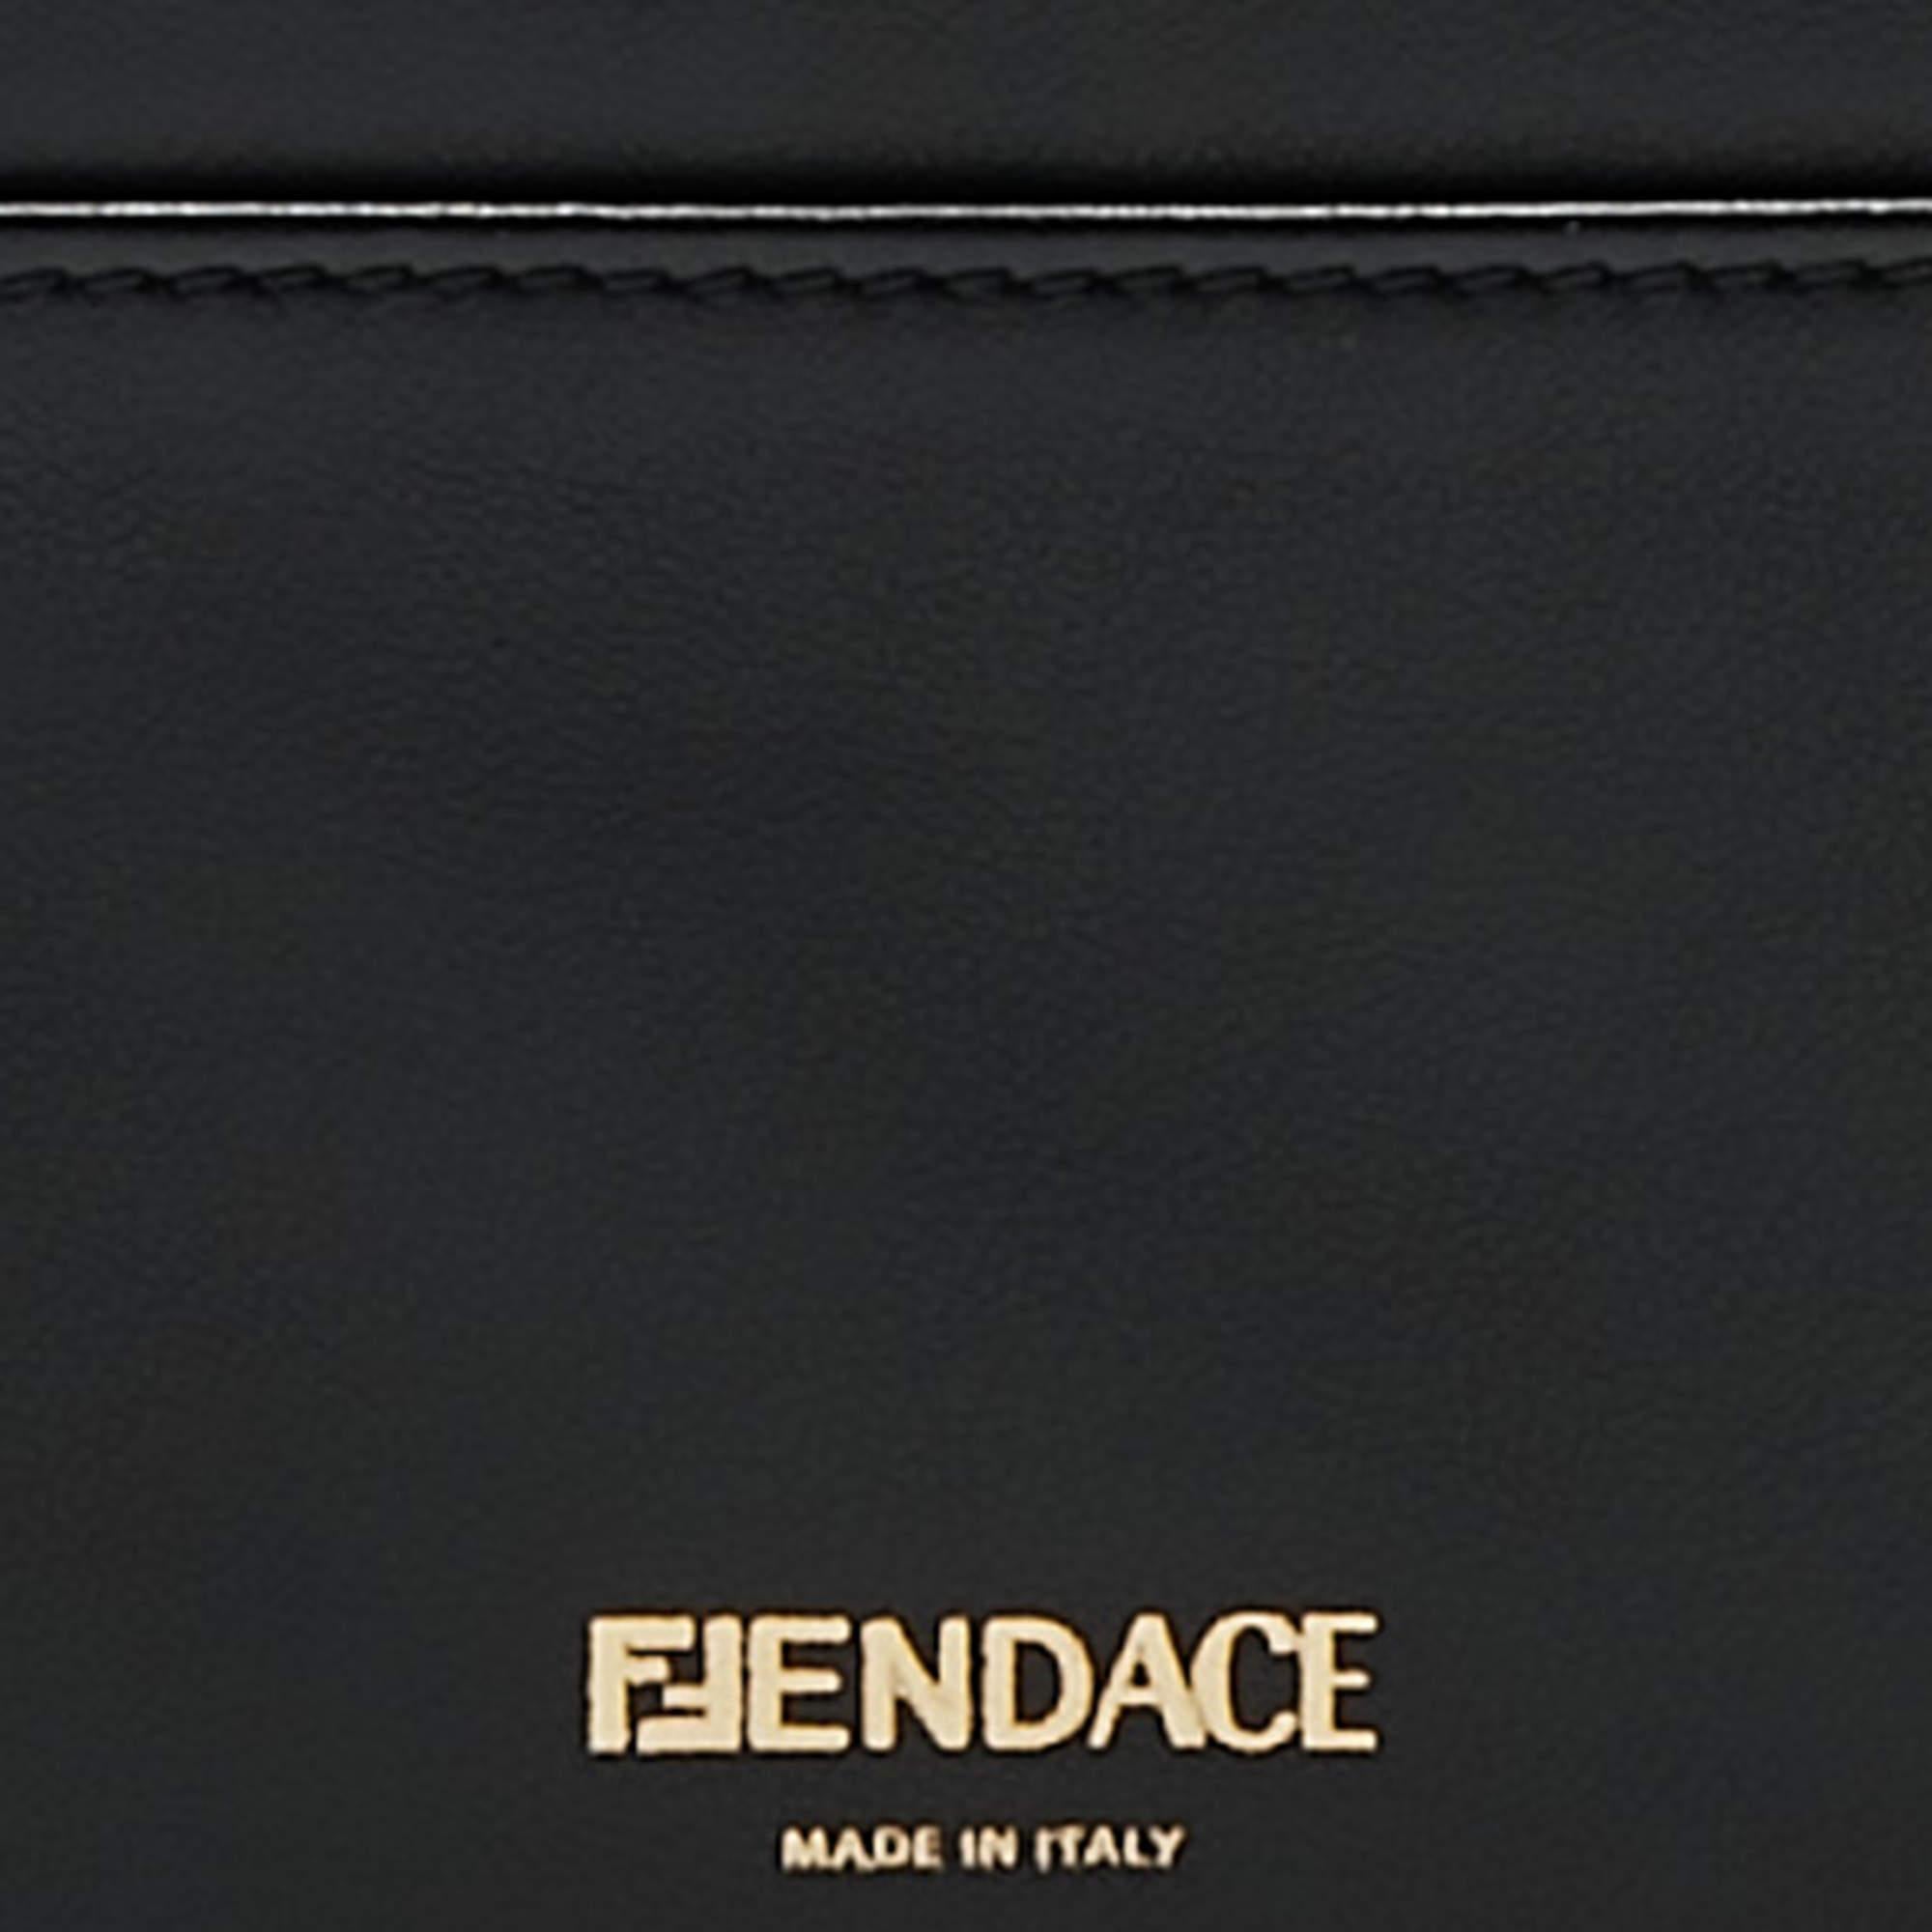 Ce luxueux cordon Fendi x Versace Fendace est réalisé en cuir noir et or, mariant l'élégance intemporelle de Fendi à l'opulence de Versace. Il présente des lignes épurées, un cordon pratique et un grand espace de rangement pour les cartes, incarnant